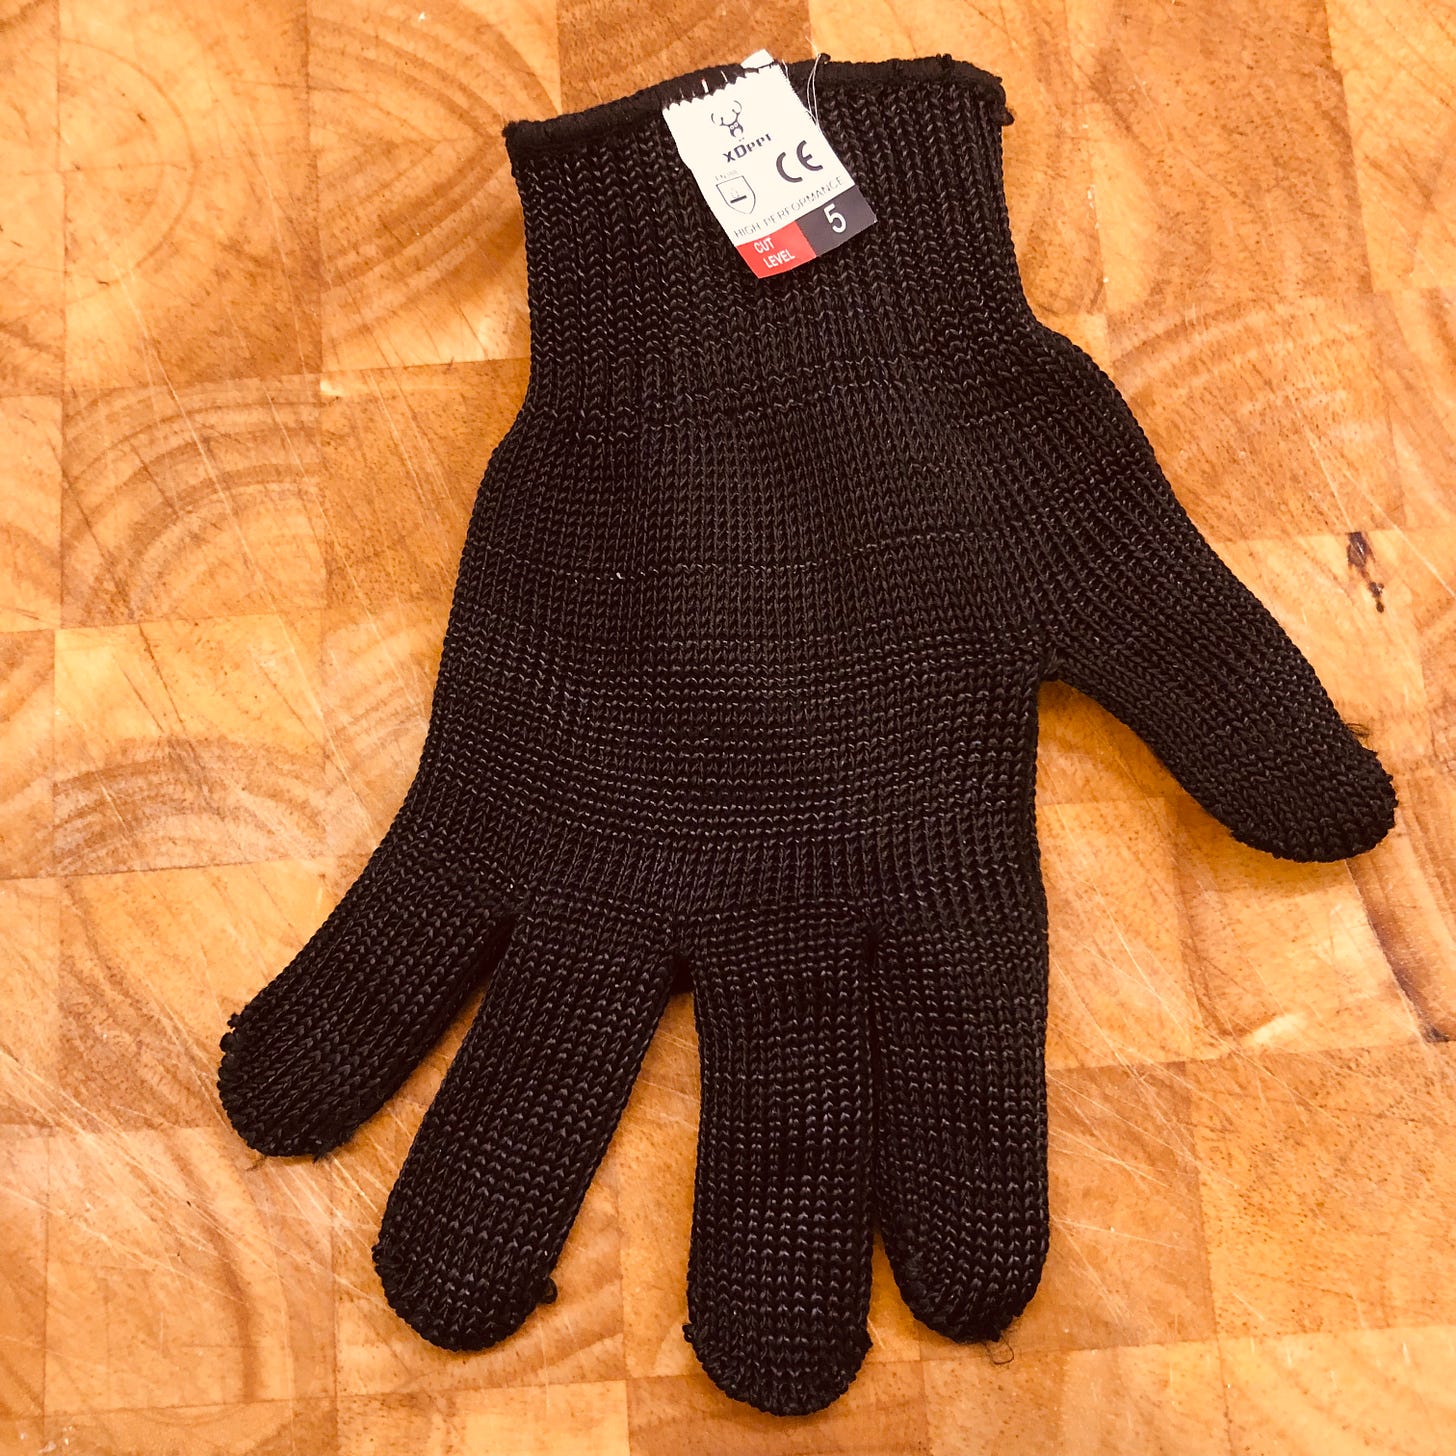 A cut-proof glove